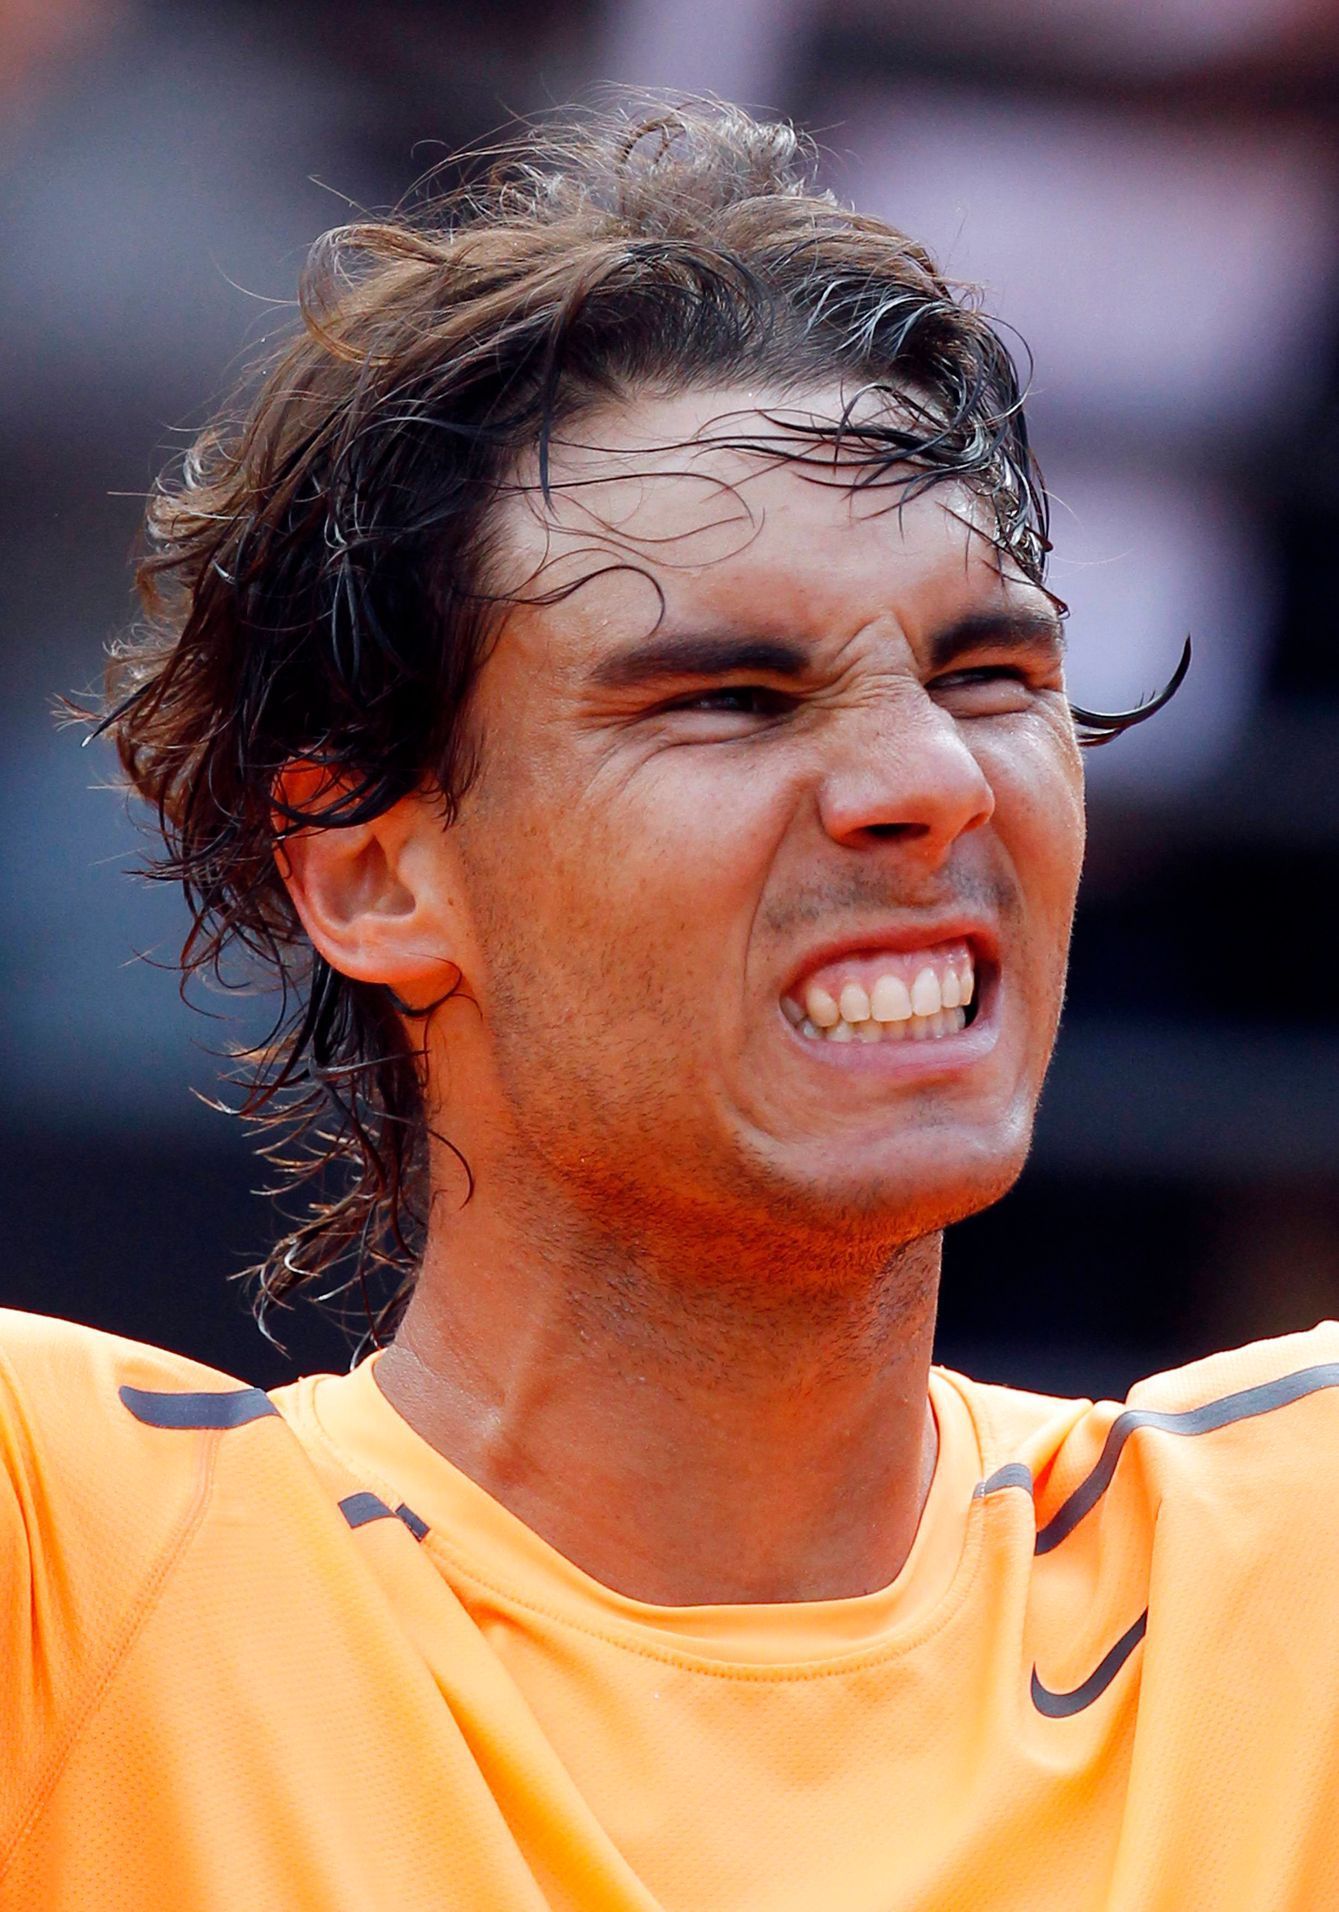 Španěl Rafael Nadal postoupil do finále turnaje v Římě